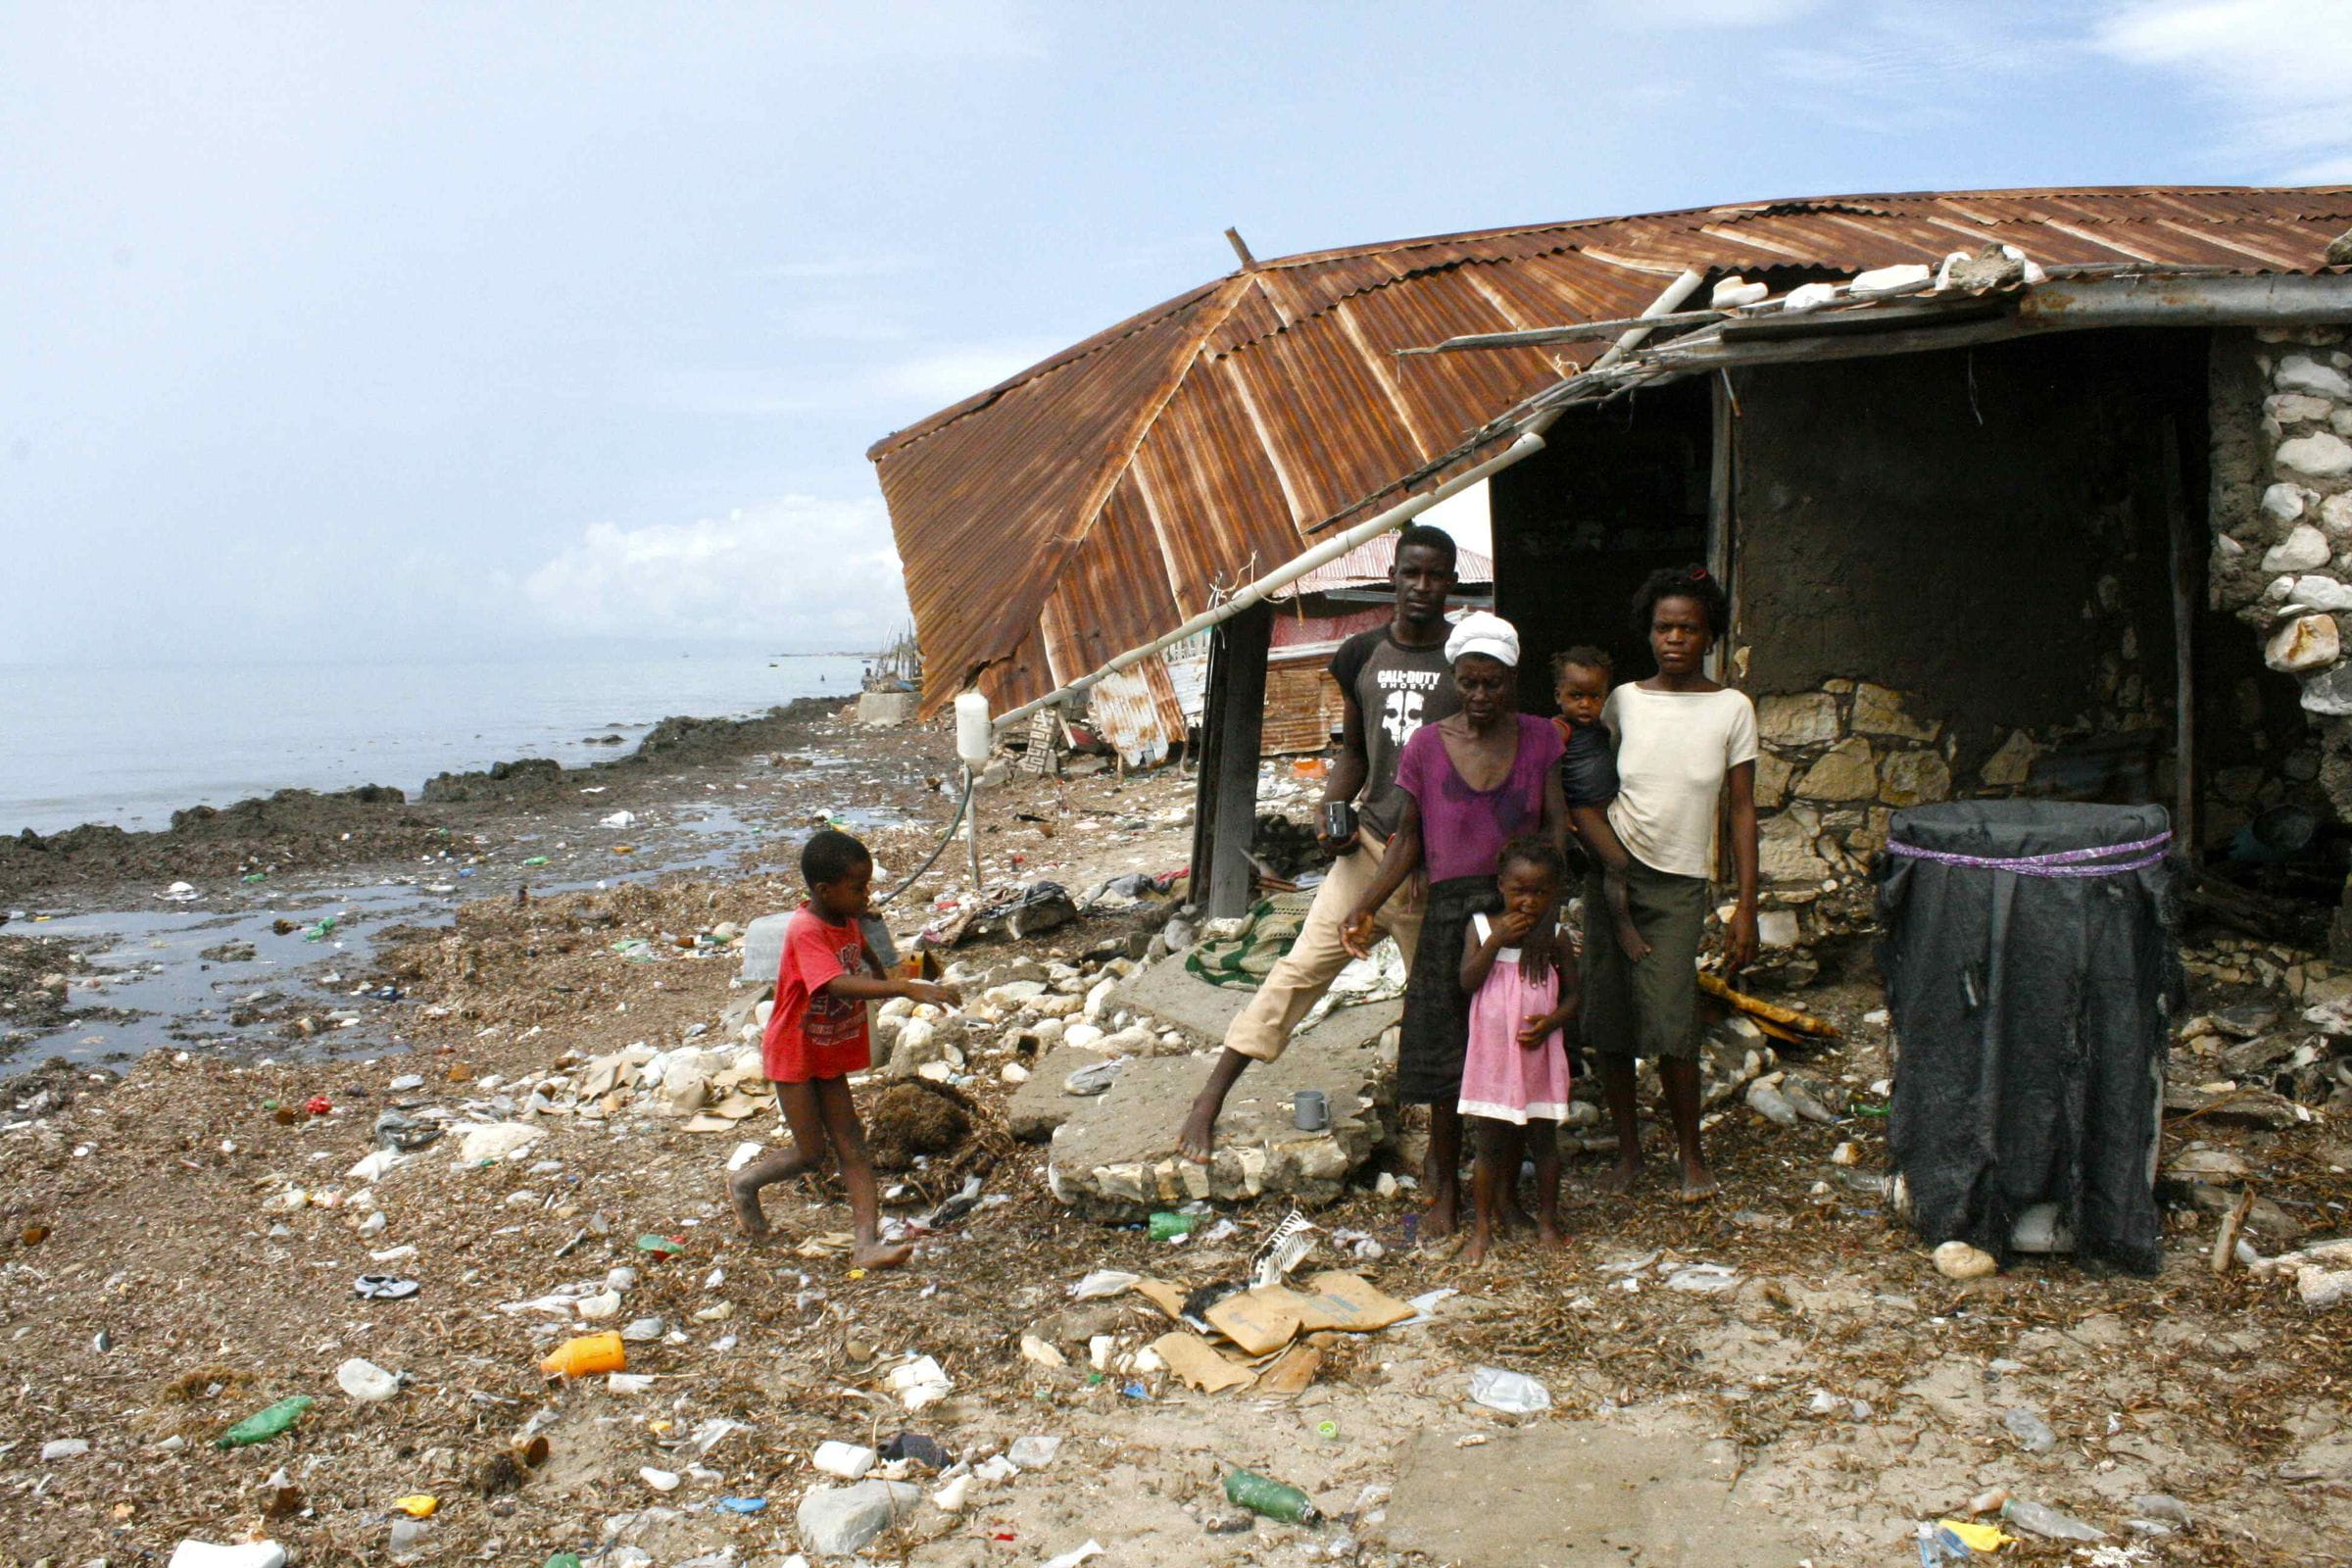 Hütte mit Familie in Haiti auf verdrecktem Grund.  (Quelle: Jürgen Schübelin)